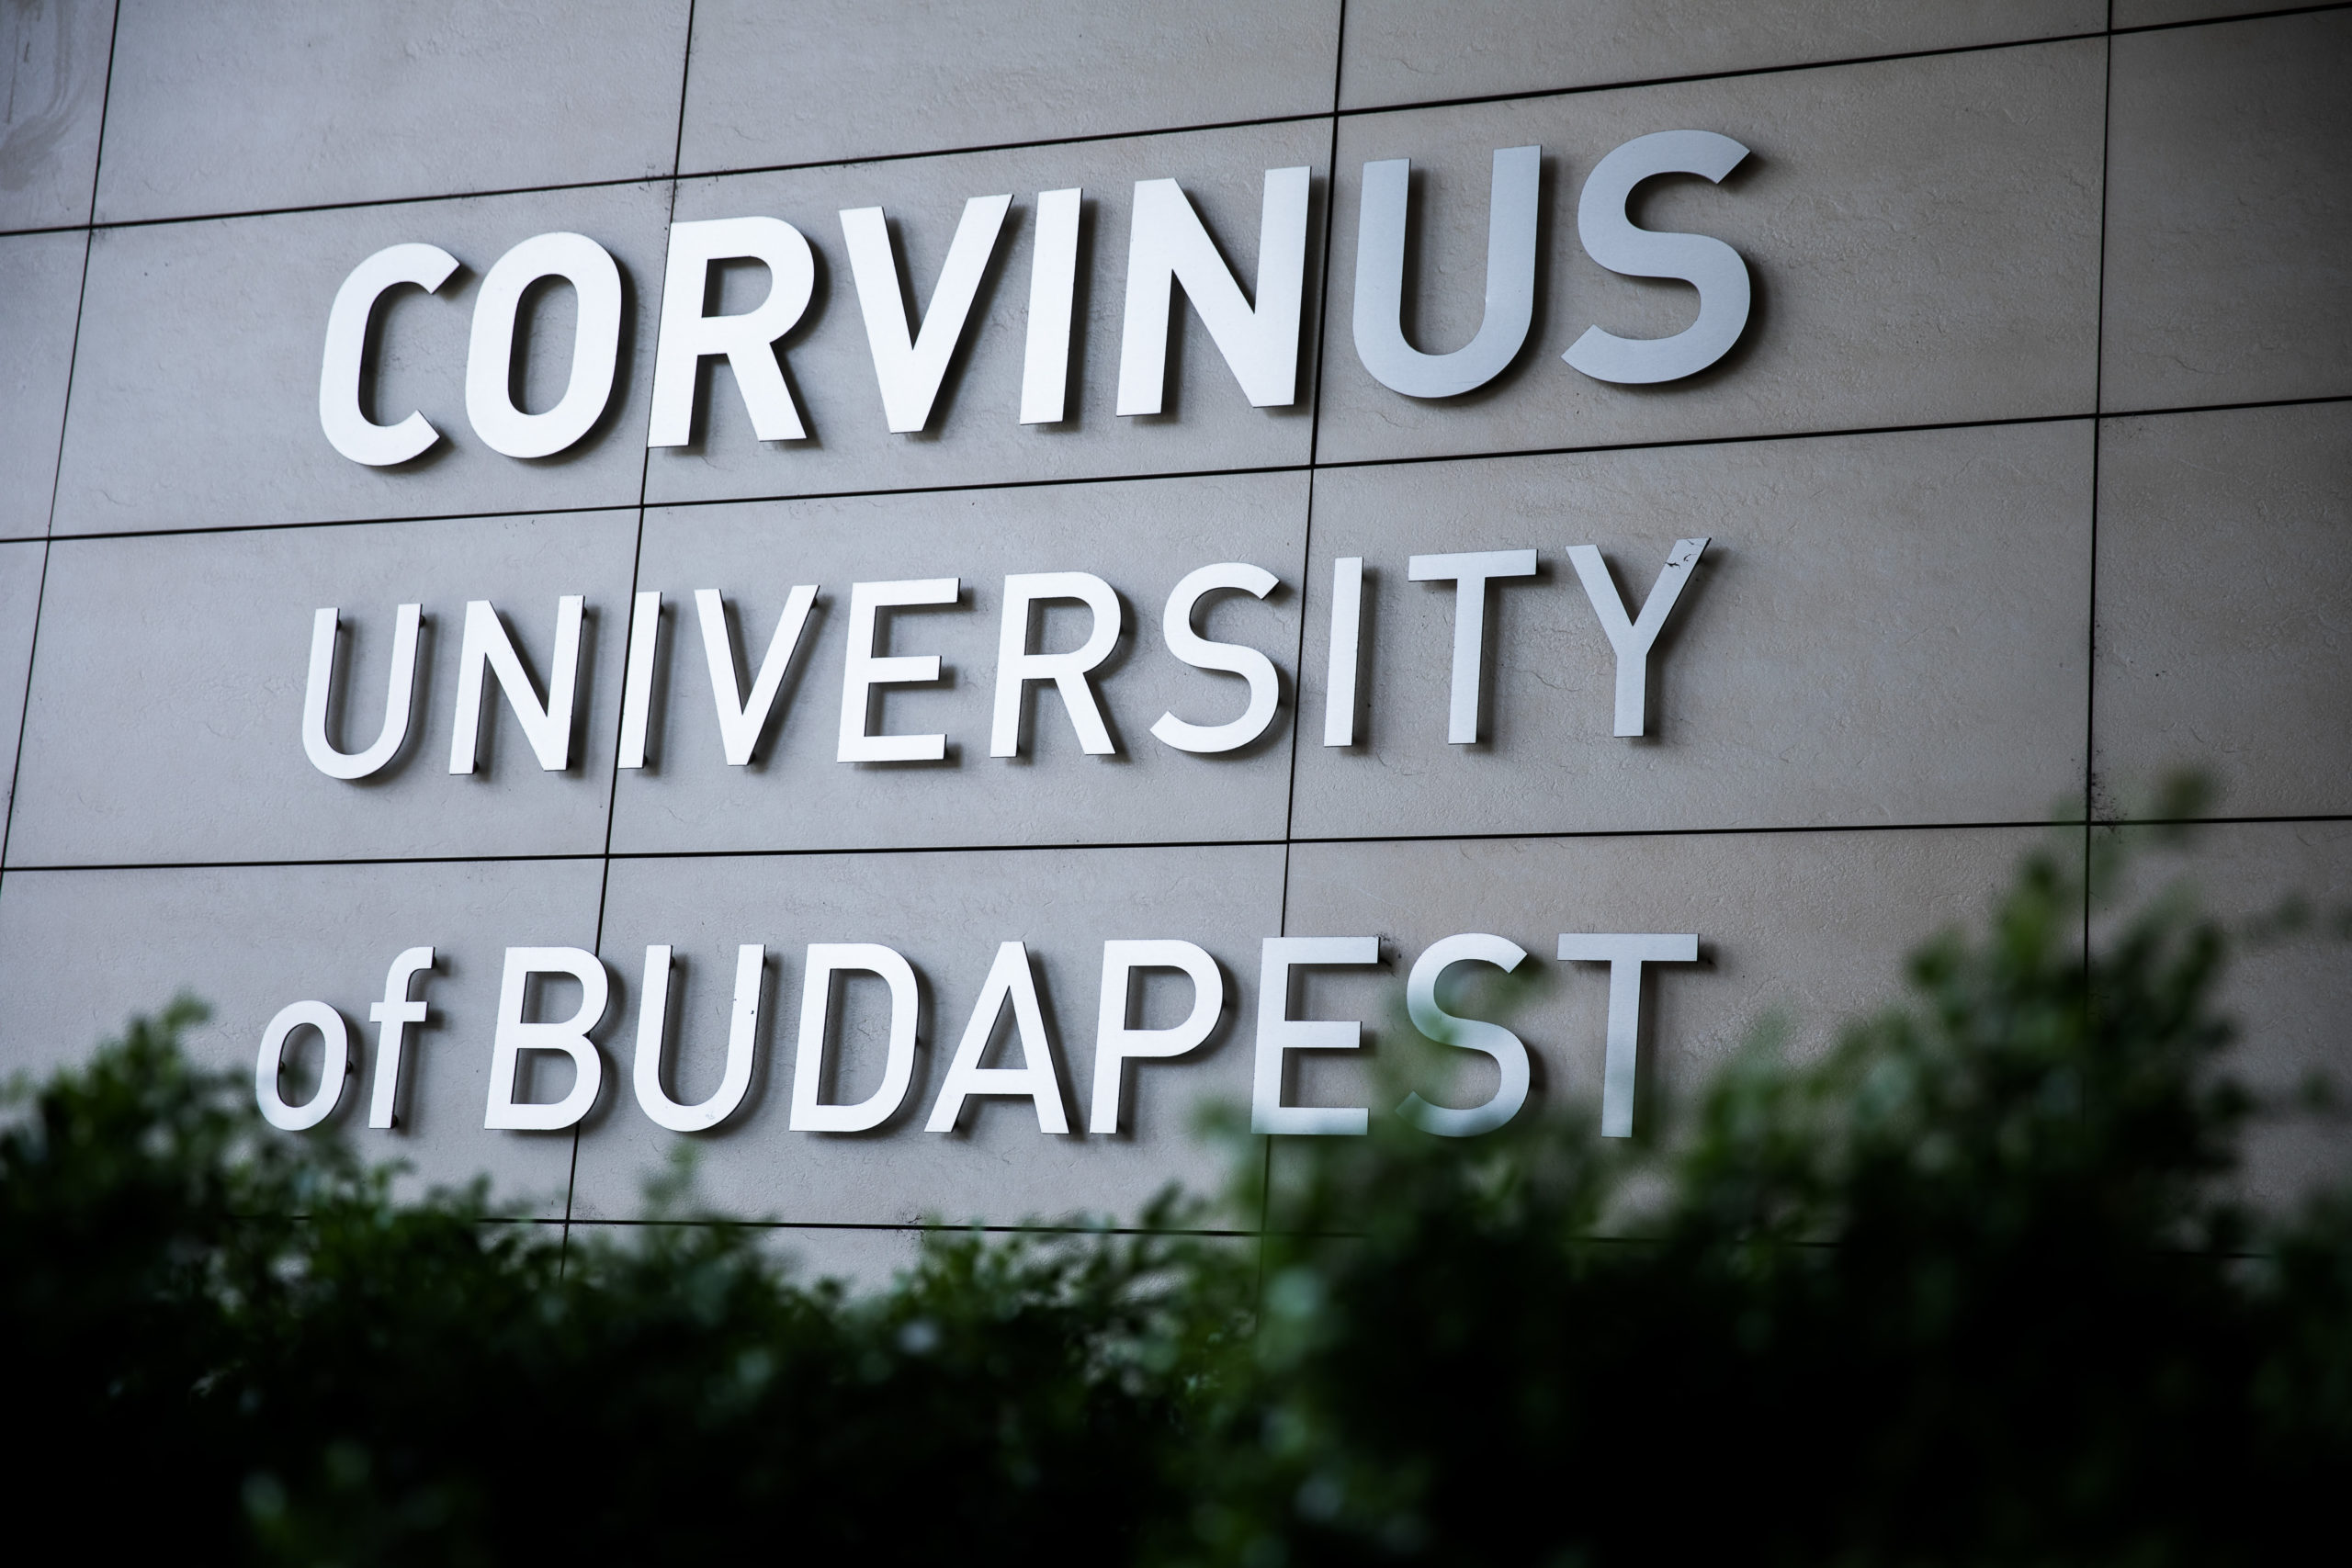 Corvinus-rektor: Ekkora reformot nem lehet úgy meglépni, hogy mindenkit megkérdezünk